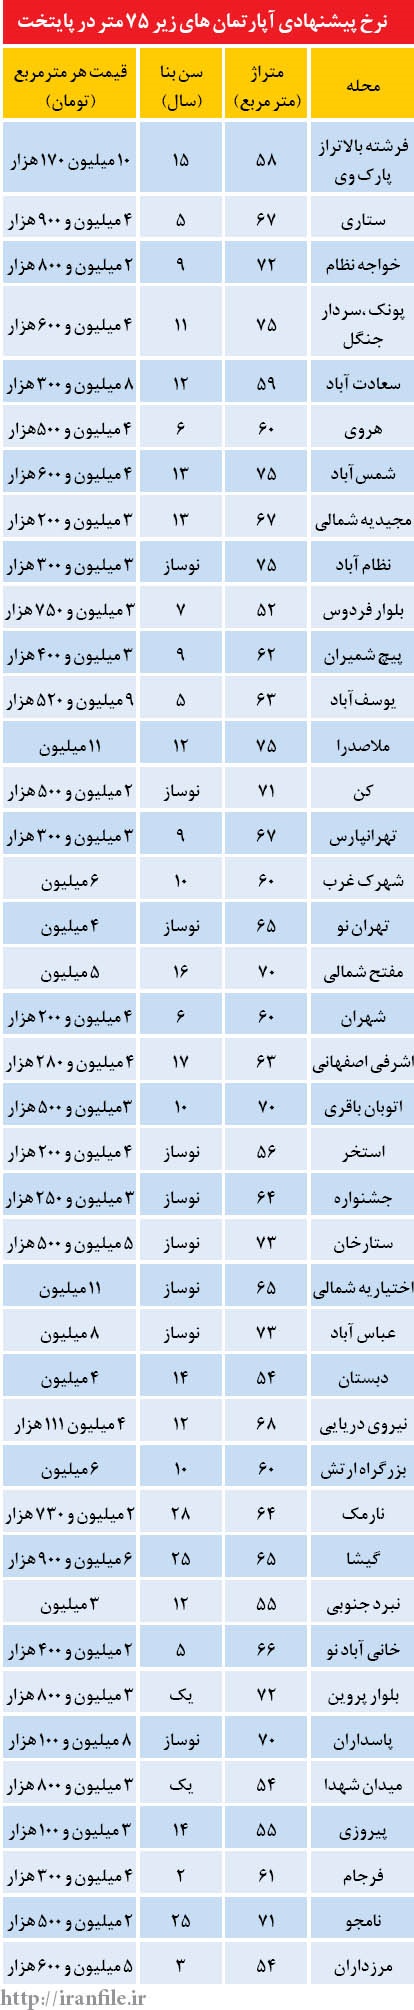 قیمت پیشنهادی مالکان تهرانی برای فروش آپارتمانهای زیر 75متر در نقاط مختلف